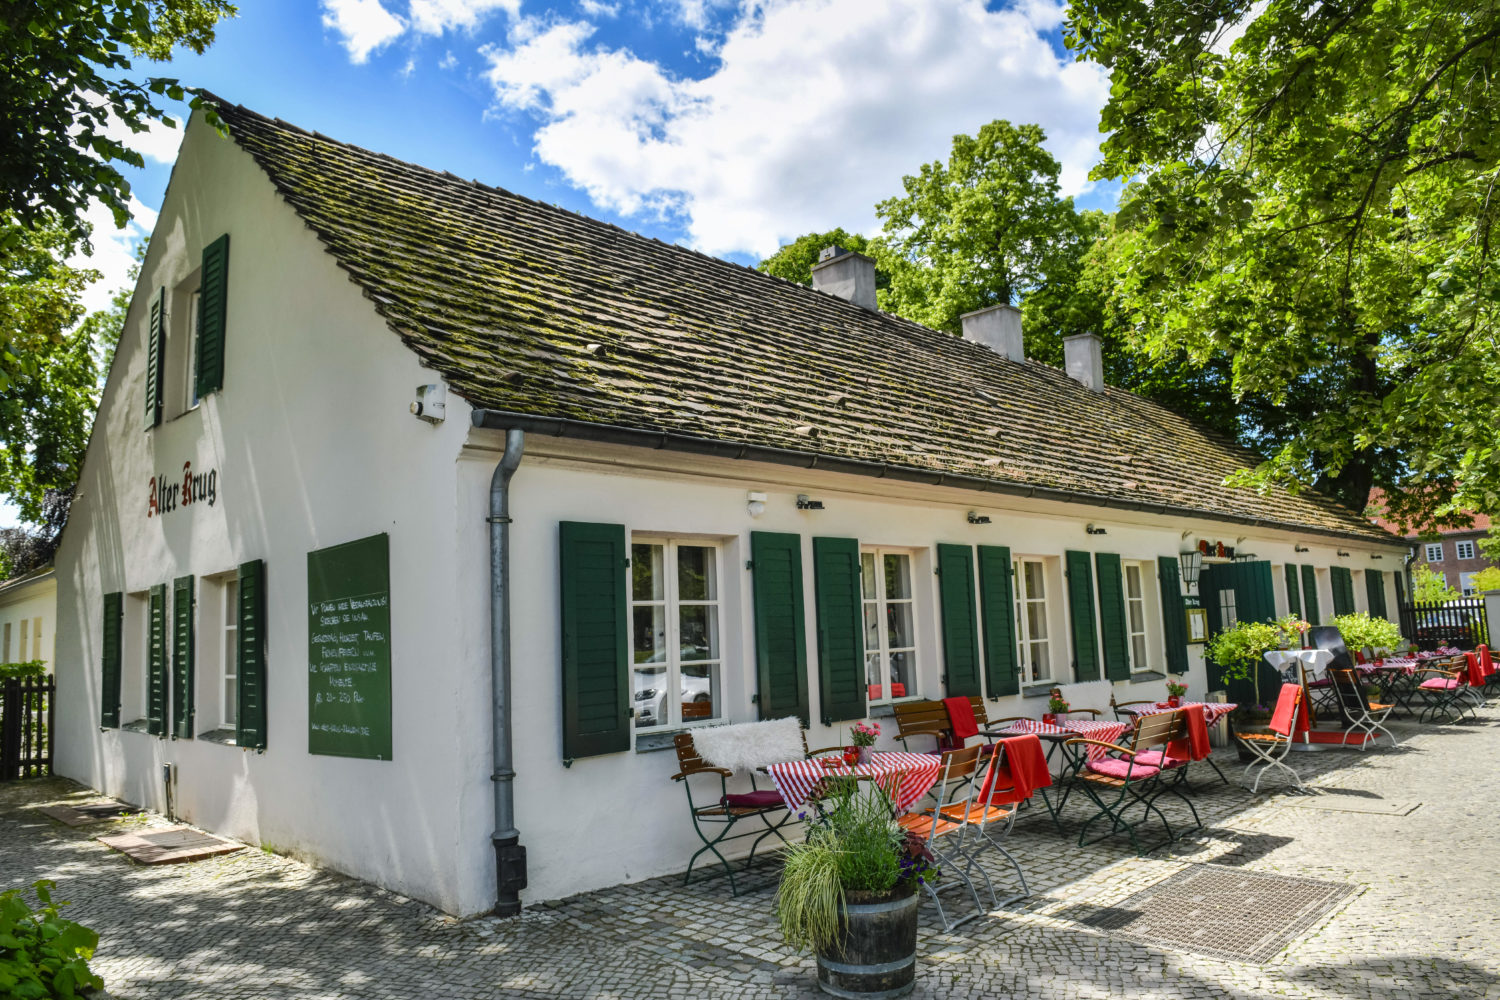 Dahlem Deutsche, rustikale Küche mit internationalem Einschlag und ein schöner Biergarten: Der Alte Krug in Dahlem ist eine beliebte Adresse.